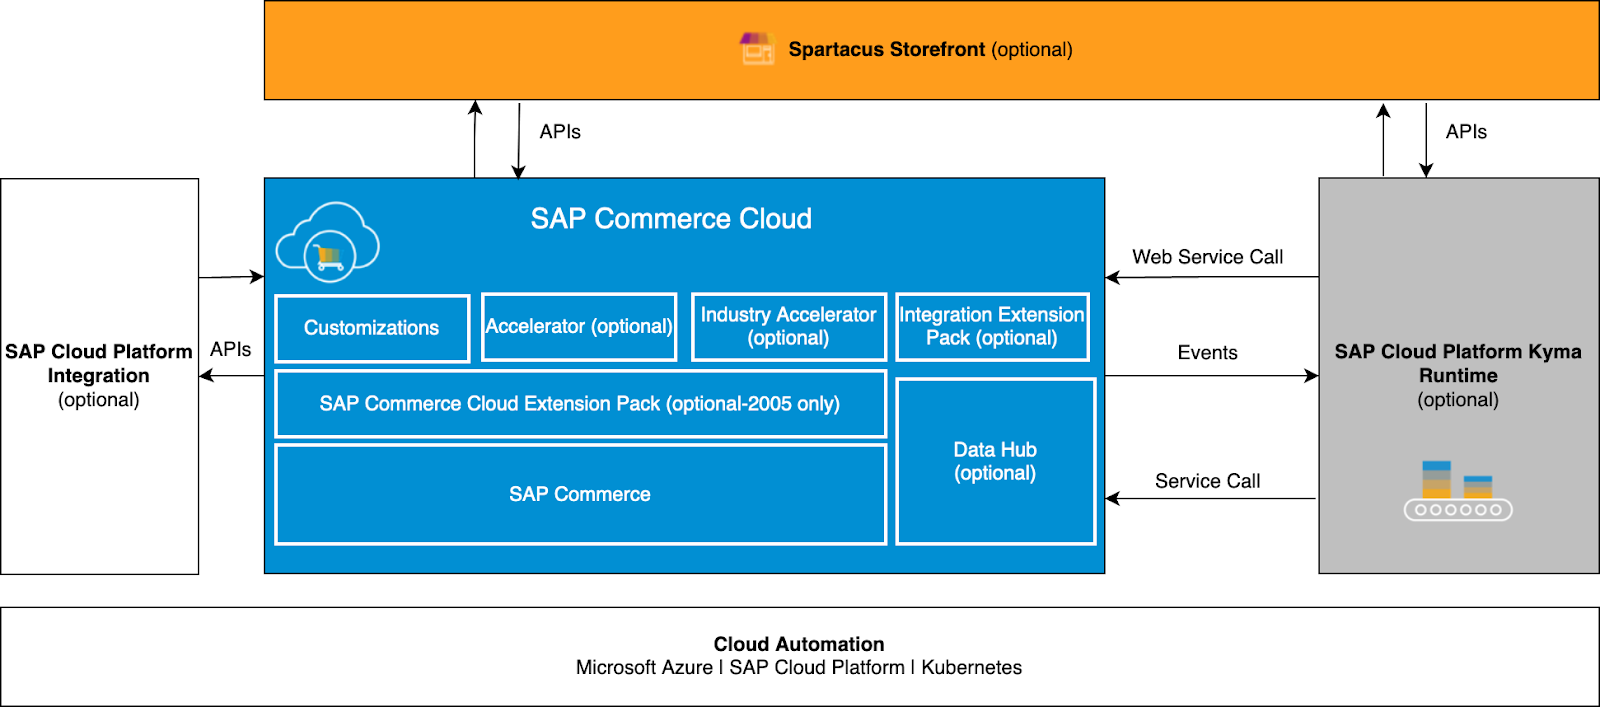 SAP Commerce Cloud Spartacus Storefront